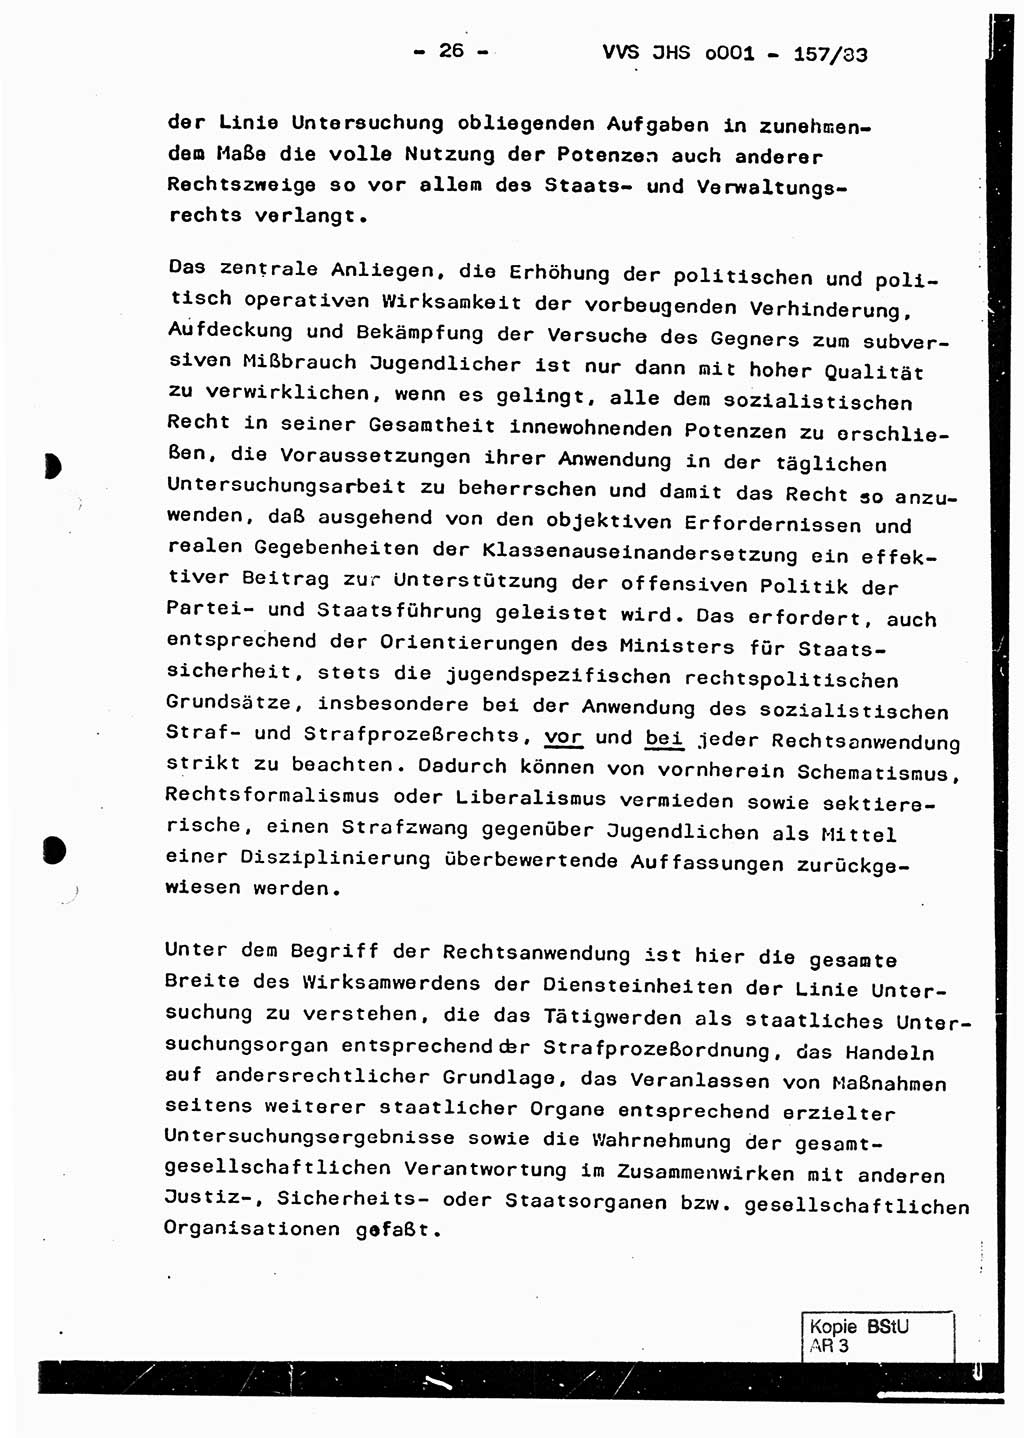 Dissertation, Oberst Helmut Lubas (BV Mdg.), Oberstleutnant Manfred Eschberger (HA IX), Oberleutnant Hans-Jürgen Ludwig (JHS), Ministerium für Staatssicherheit (MfS) [Deutsche Demokratische Republik (DDR)], Juristische Hochschule (JHS), Vertrauliche Verschlußsache (VVS) o001-257/83, Potsdam 1983, Seite 26 (Diss. MfS DDR JHS VVS o001-257/83 1983, S. 26)